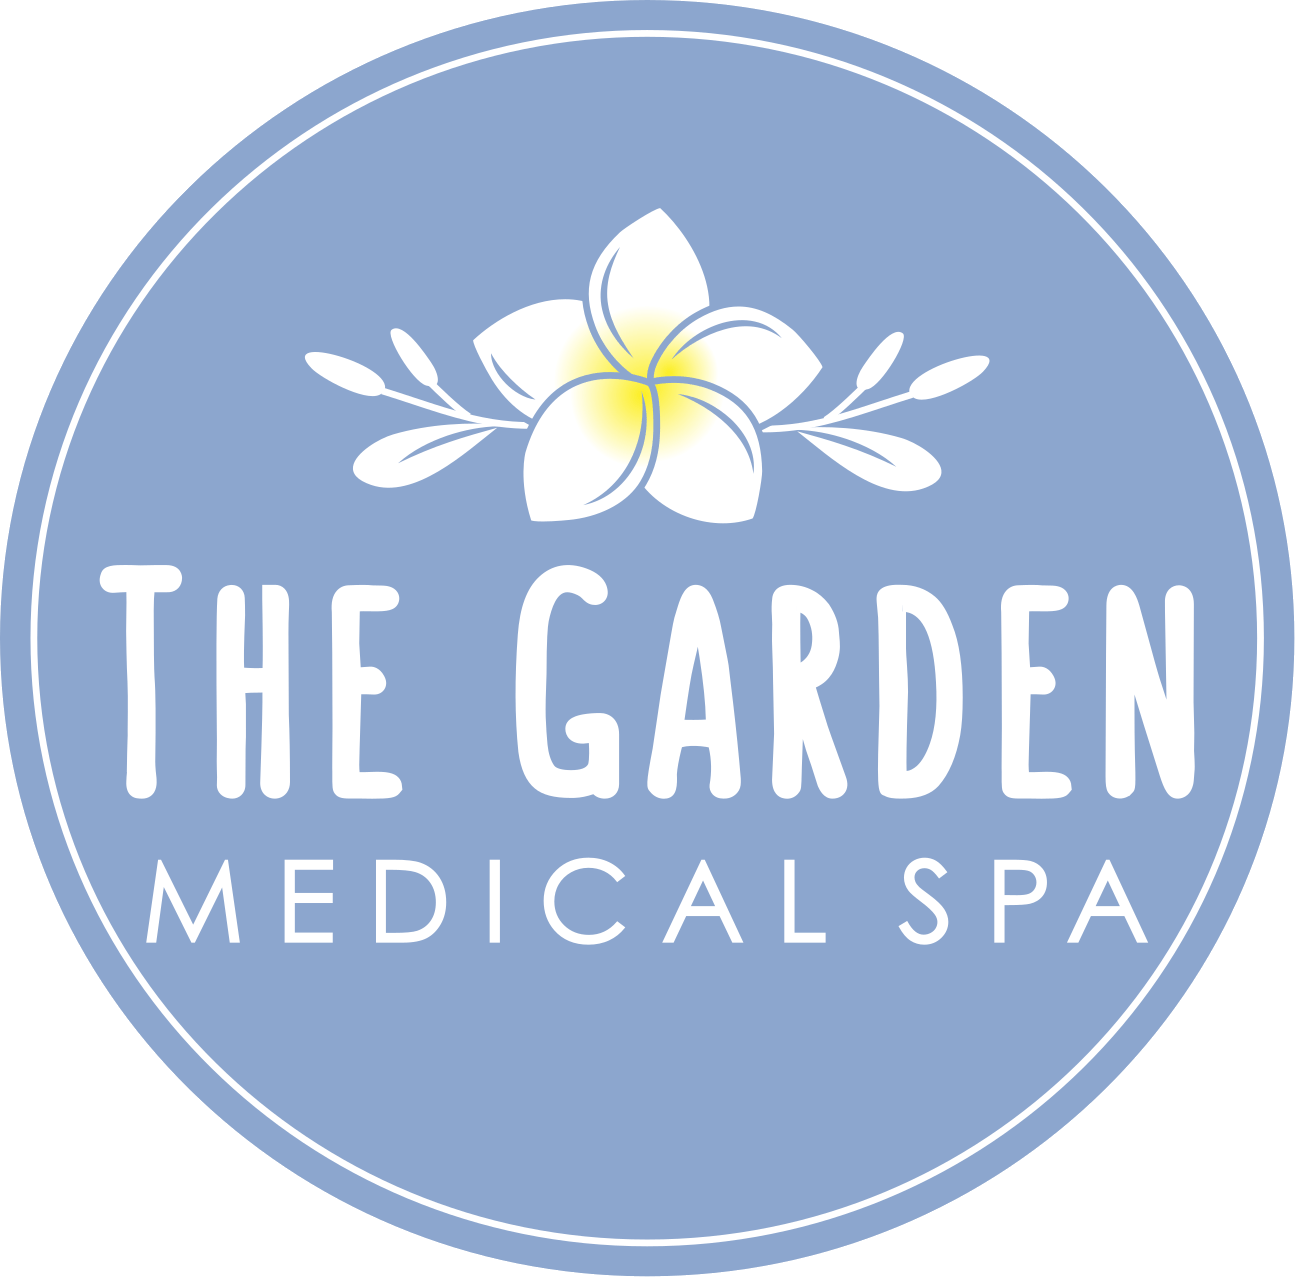 The Garden Medical Spa